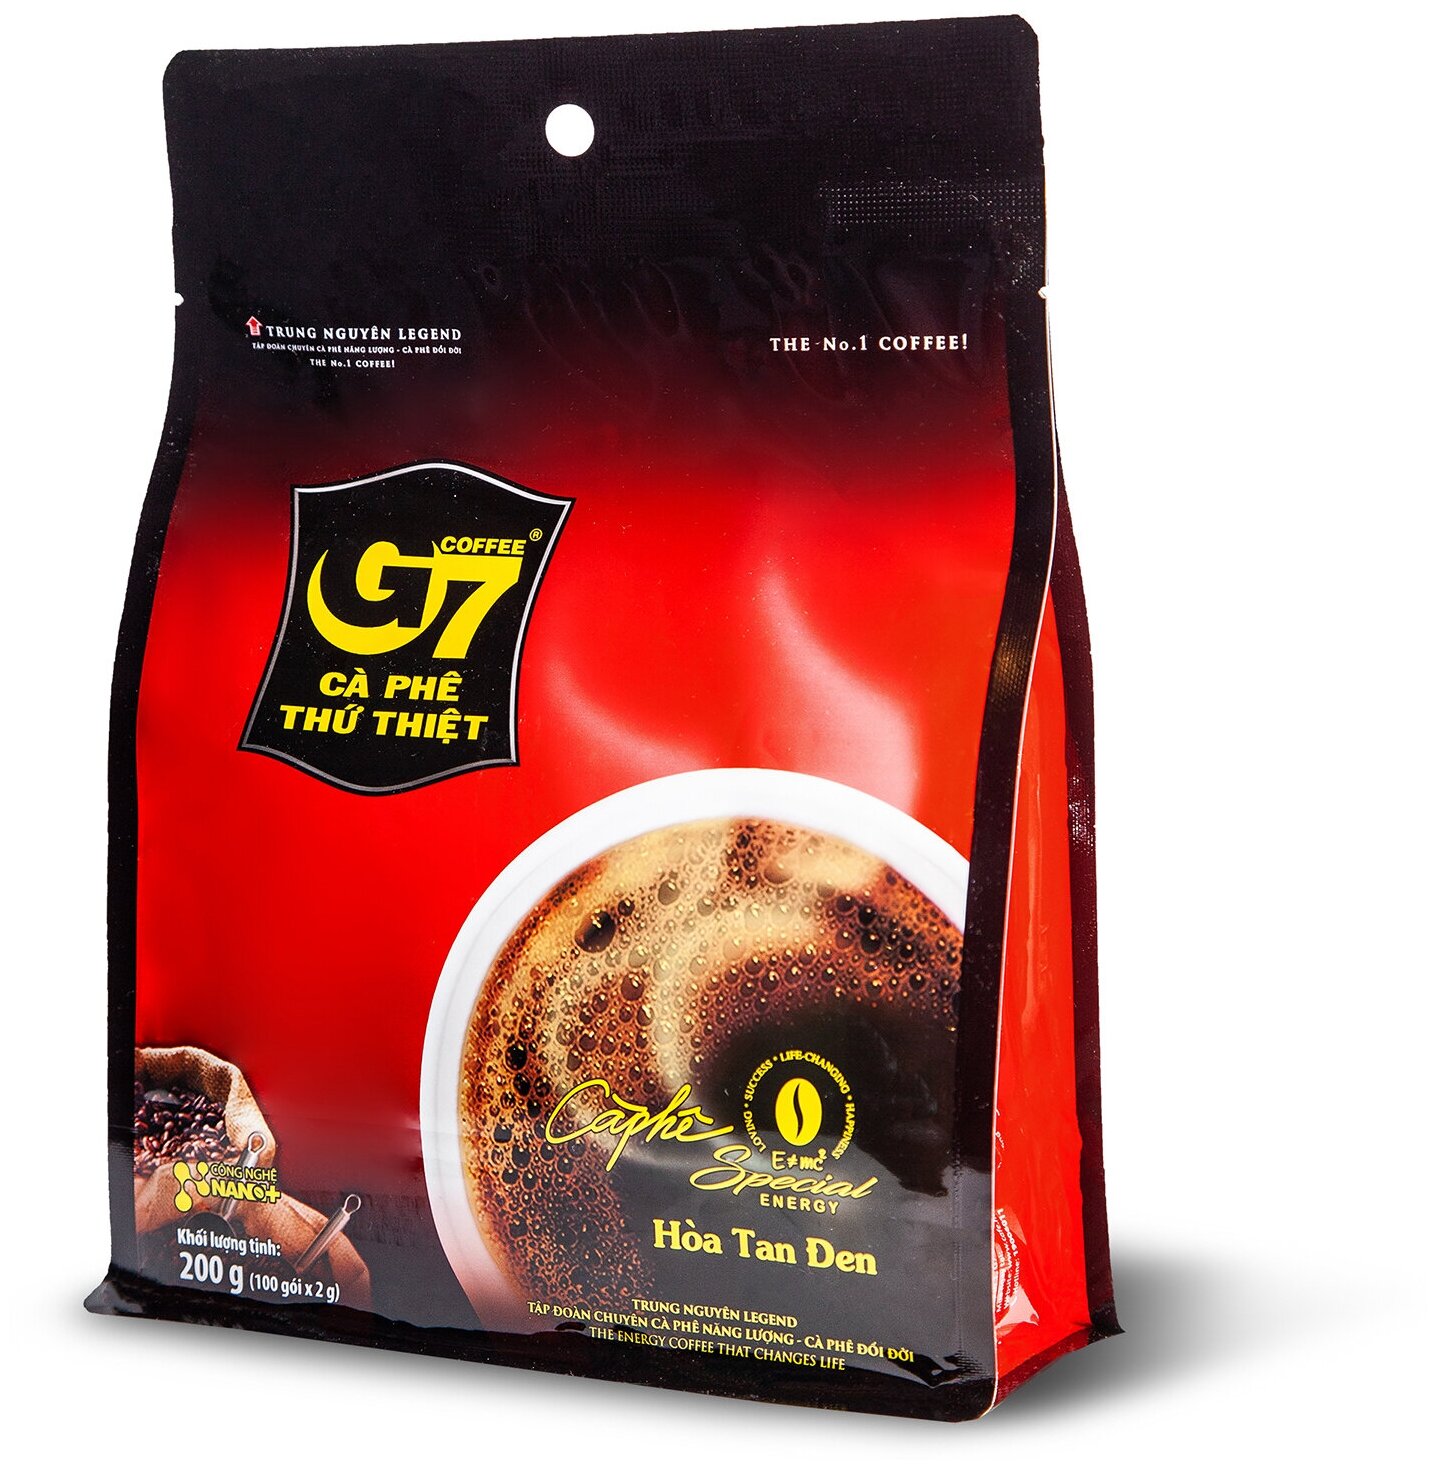 Кофе растворимый Трунг нгуен (Trung Nguyen) G7 черный кофе в пакетиках (100 шт.), 200 г